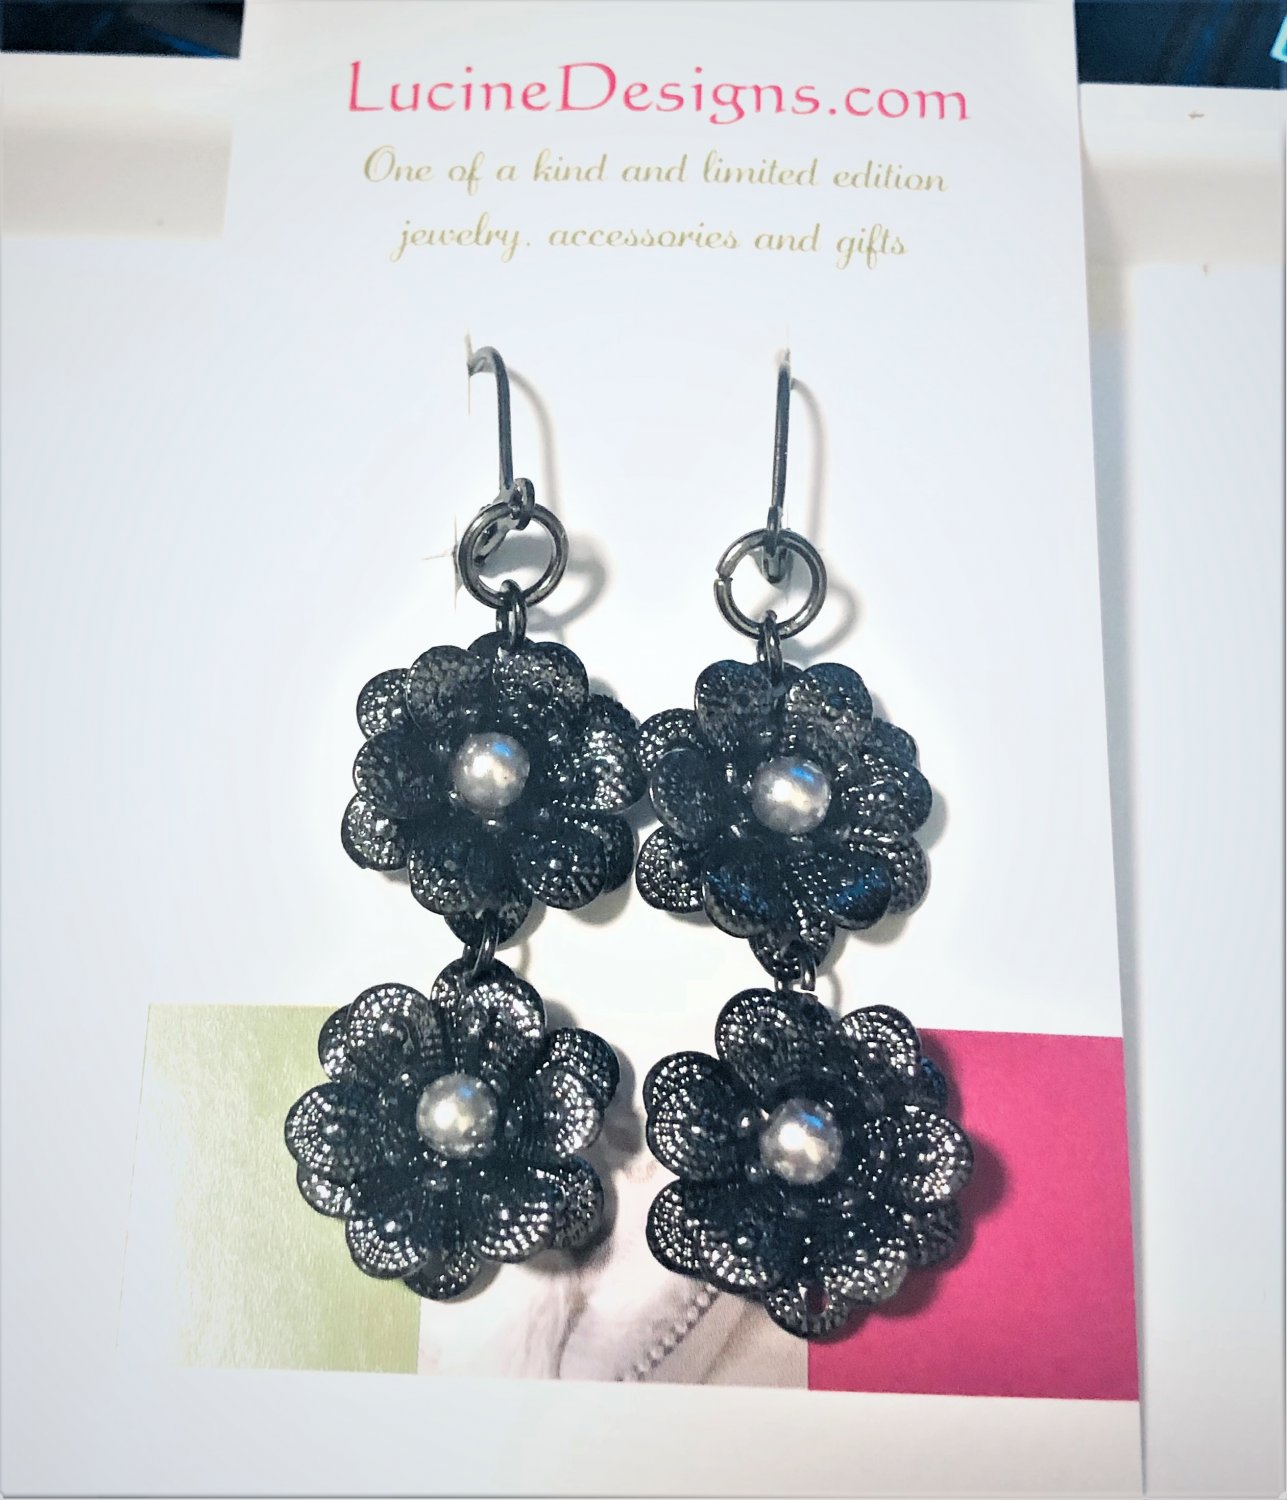 Flower Gunmetal color linear drop earrings, #3642E, gift ideas, BFF gifts